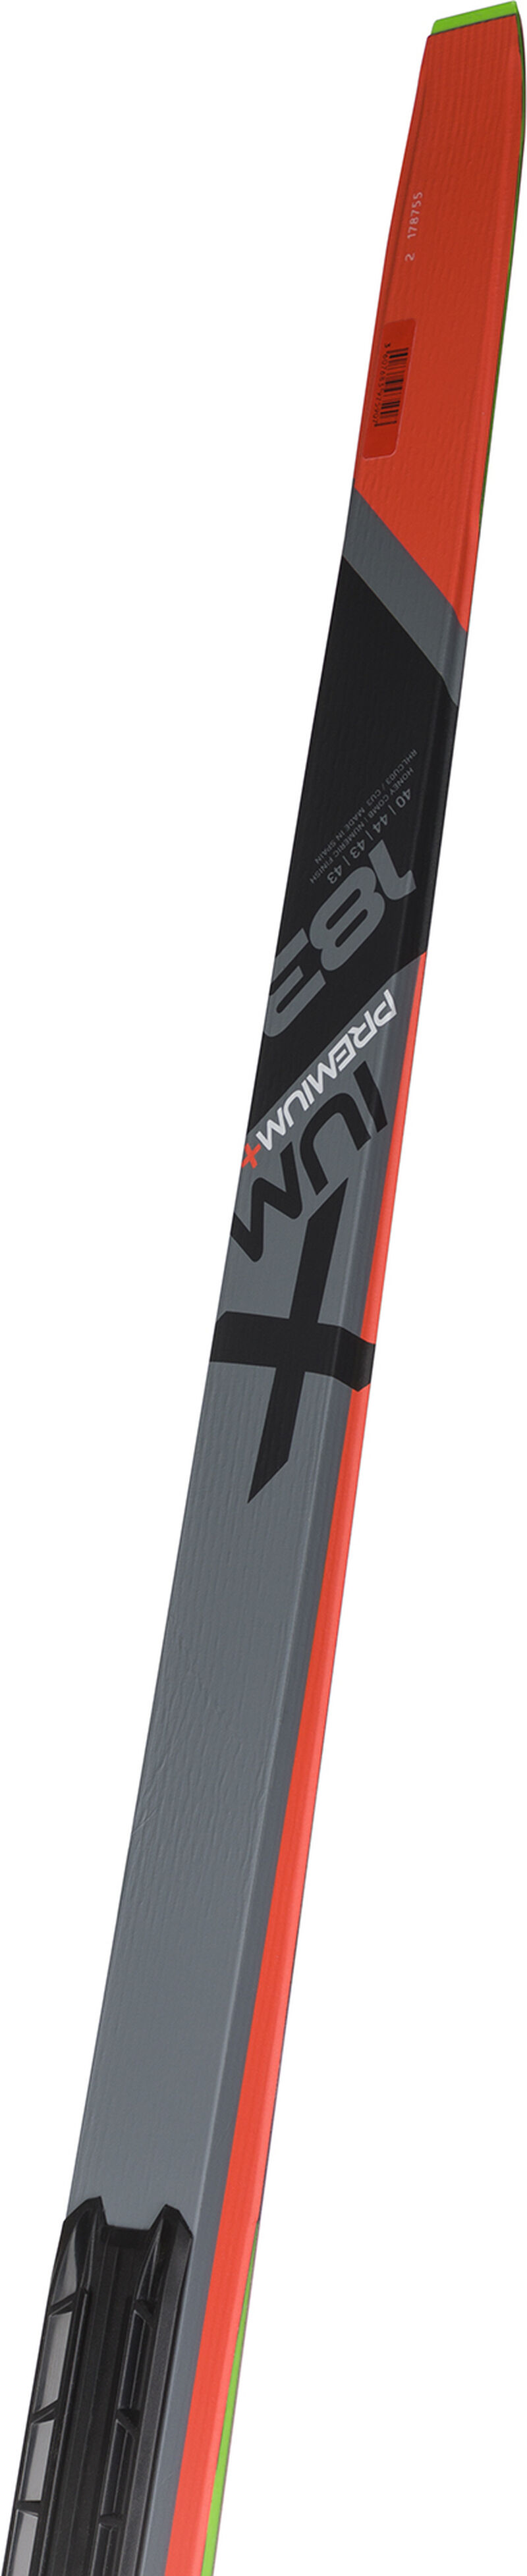 Rossignol Unisex Nordic Racing Skis X-IUM SKATING PREMIUM+S3-IFP MEDIUM multicolor